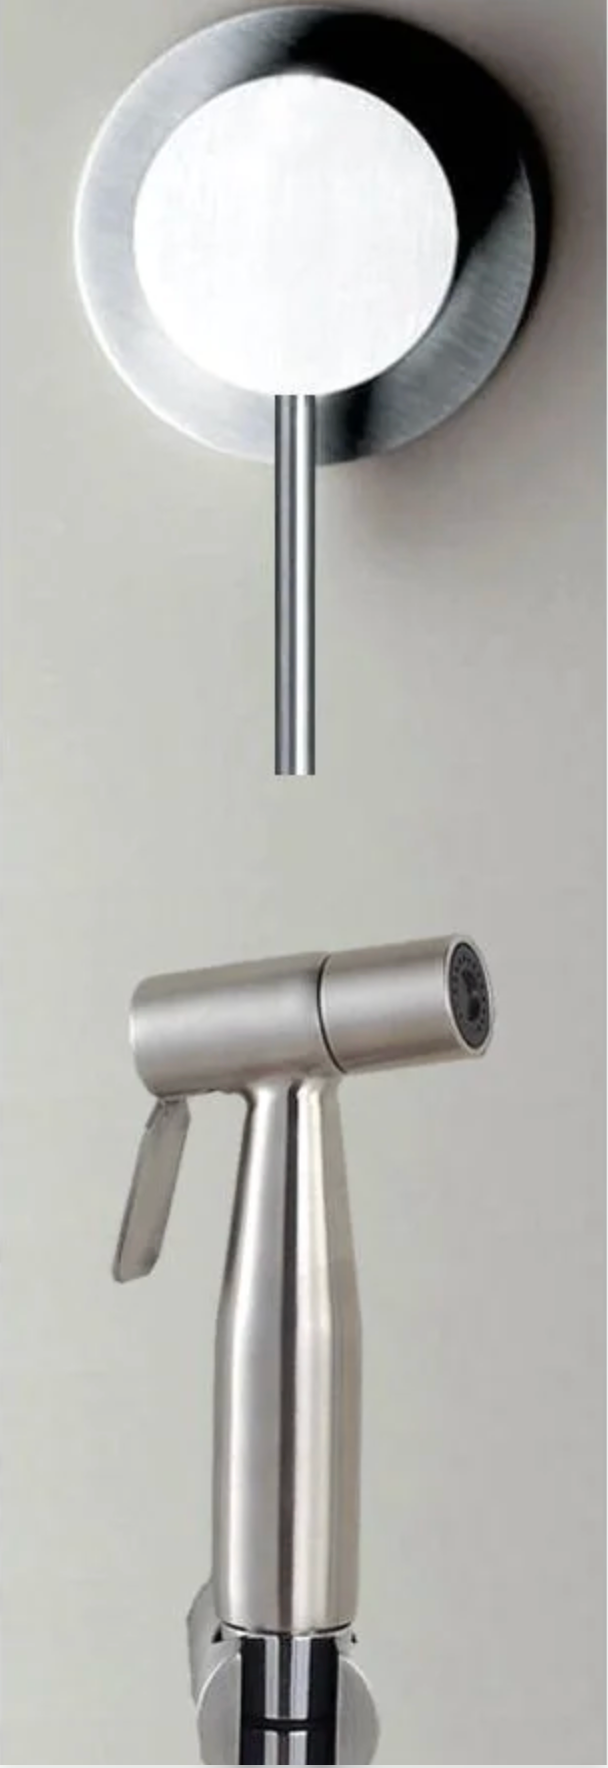 Einbau-WC-Duschgarnitur aus Edelstahl (Warmwasser)